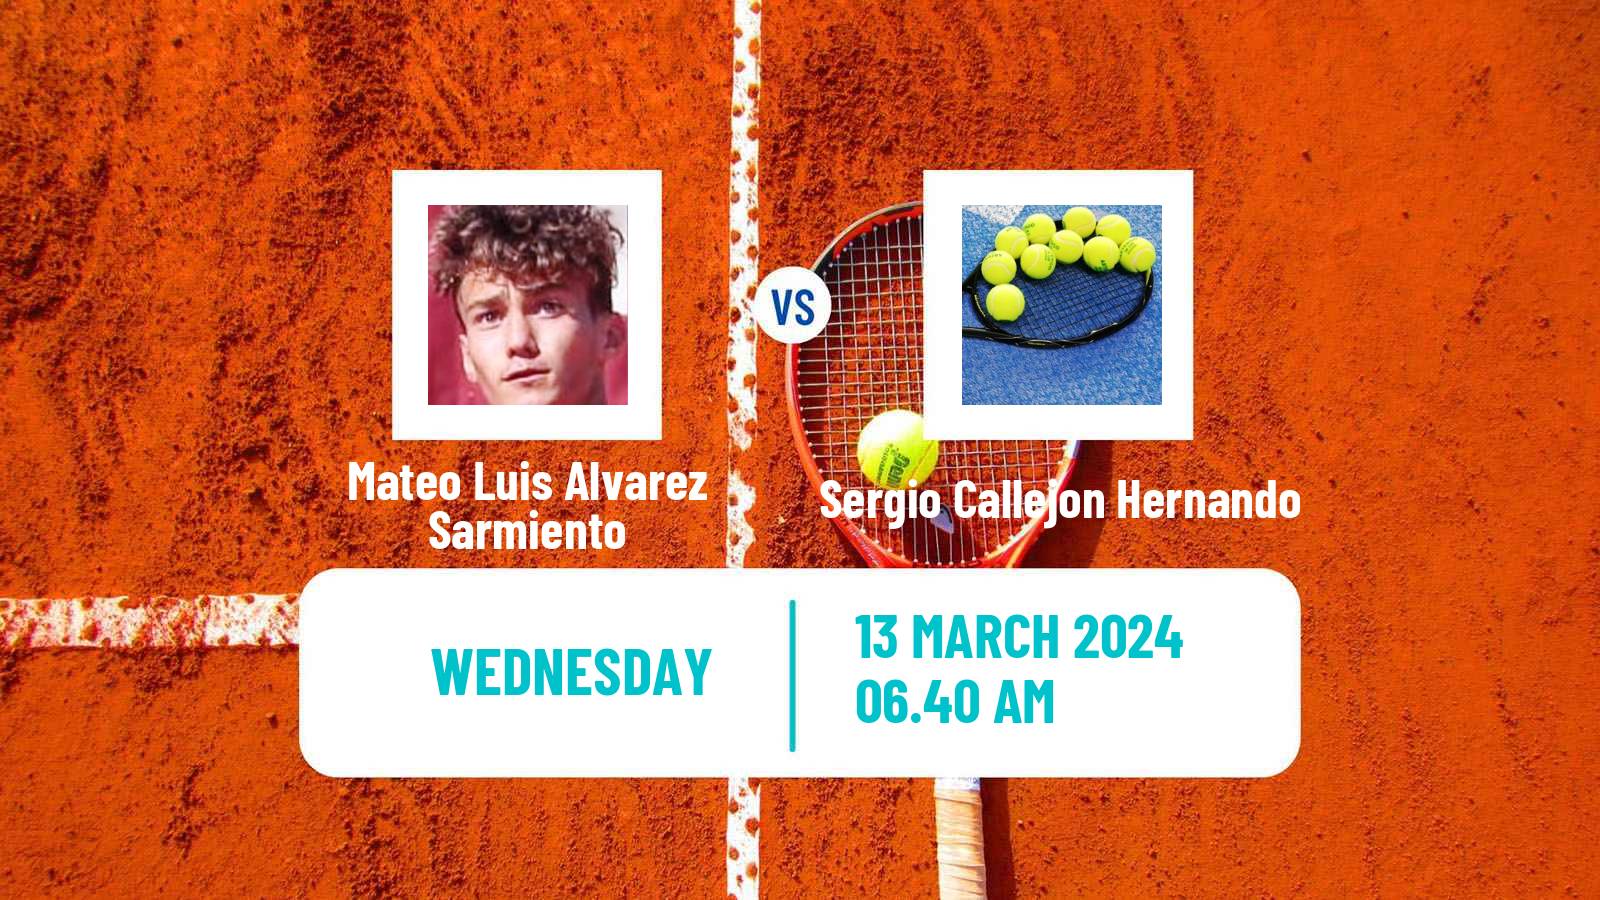 Tennis ITF M15 Les Franqueses Del Valles Men Mateo Luis Alvarez Sarmiento - Sergio Callejon Hernando